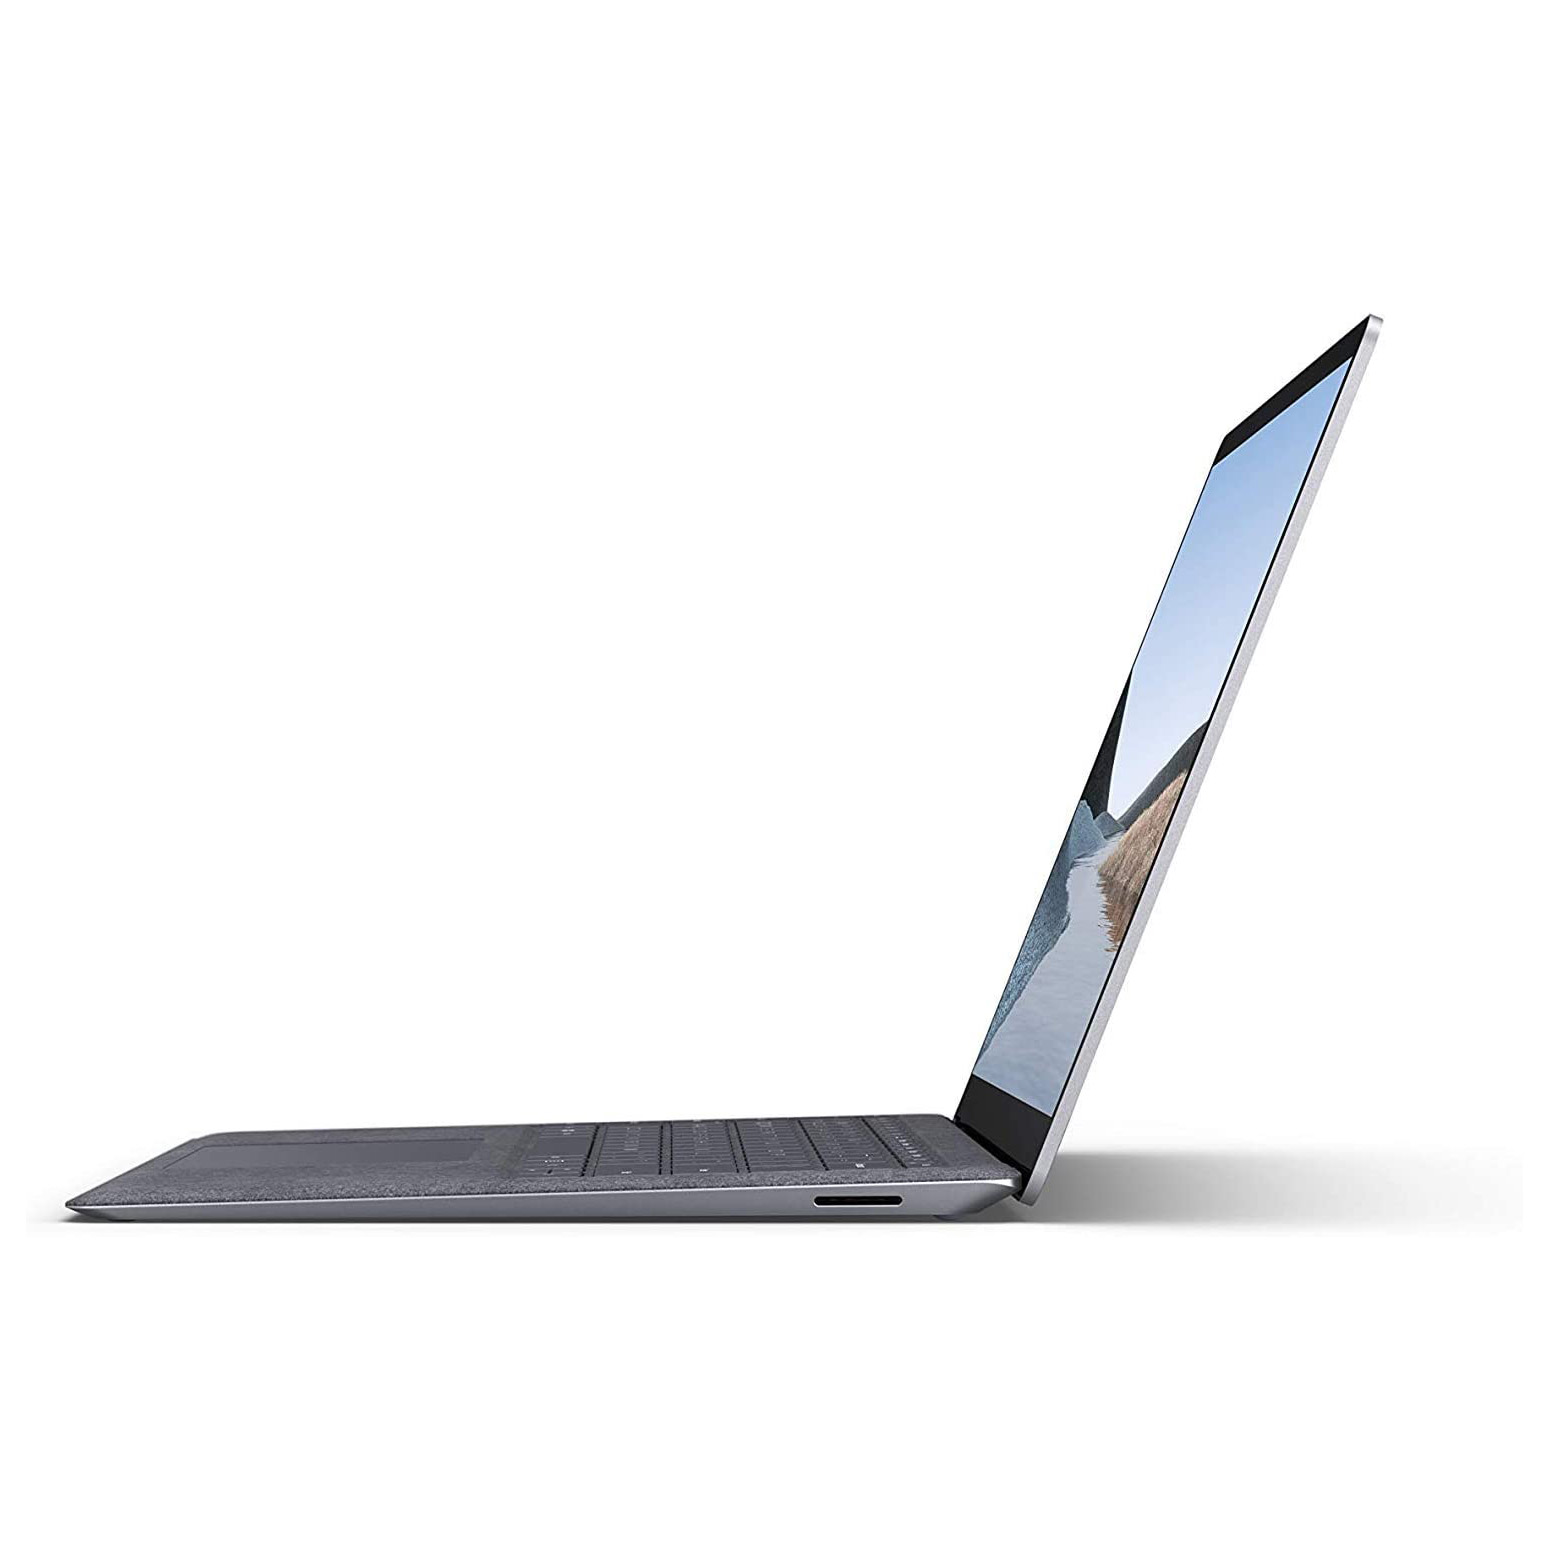 لپ تاپ 13.5 اینچی مایکروسافت Microsoft Surface Laptop 3 Intel® Core™i5-1035G7 8/128GB SSD 13.5 inches QHD Touchscreen Intel® Iris™ PlusGraphics System Shared - آونگ سل - فروشگاه تخصصی لپ تاپ و تجهیزات کامپیوتری